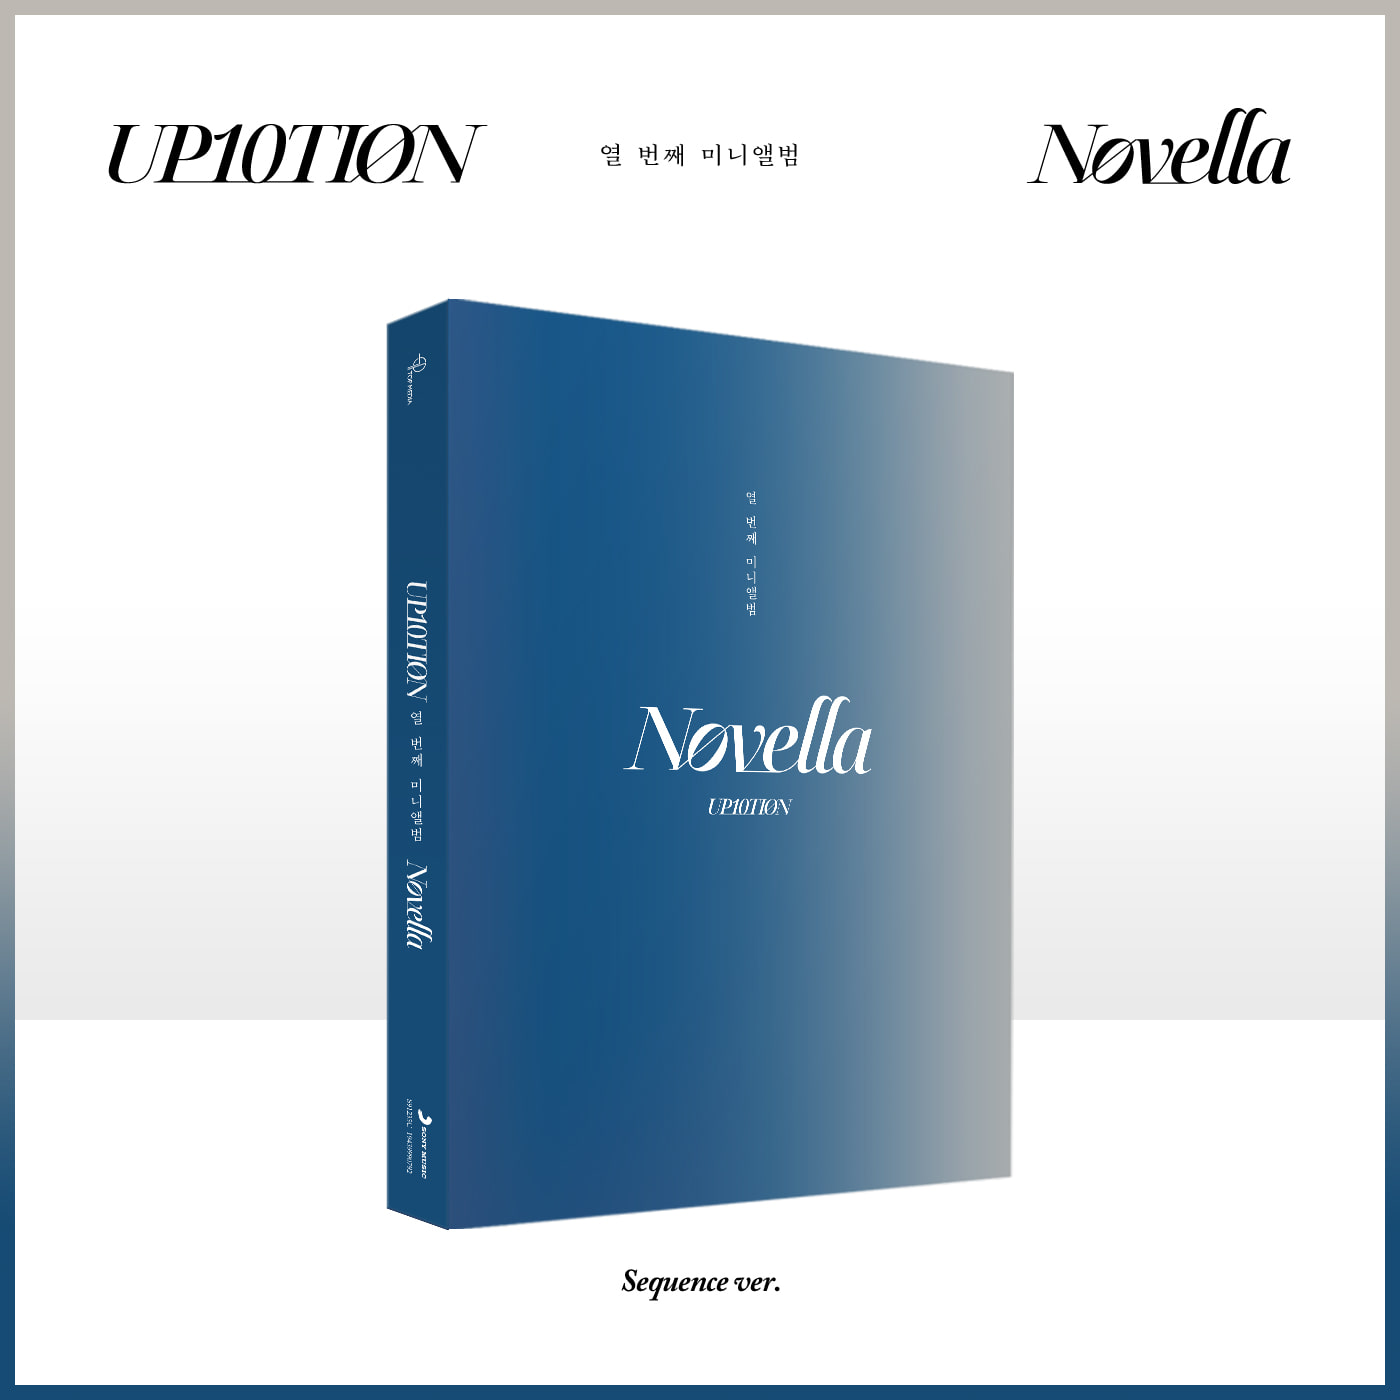 업텐션(UP10TION) - 10th MINI ALBUM [Novella] (Sequence ver.)케이팝스토어(kpop store)